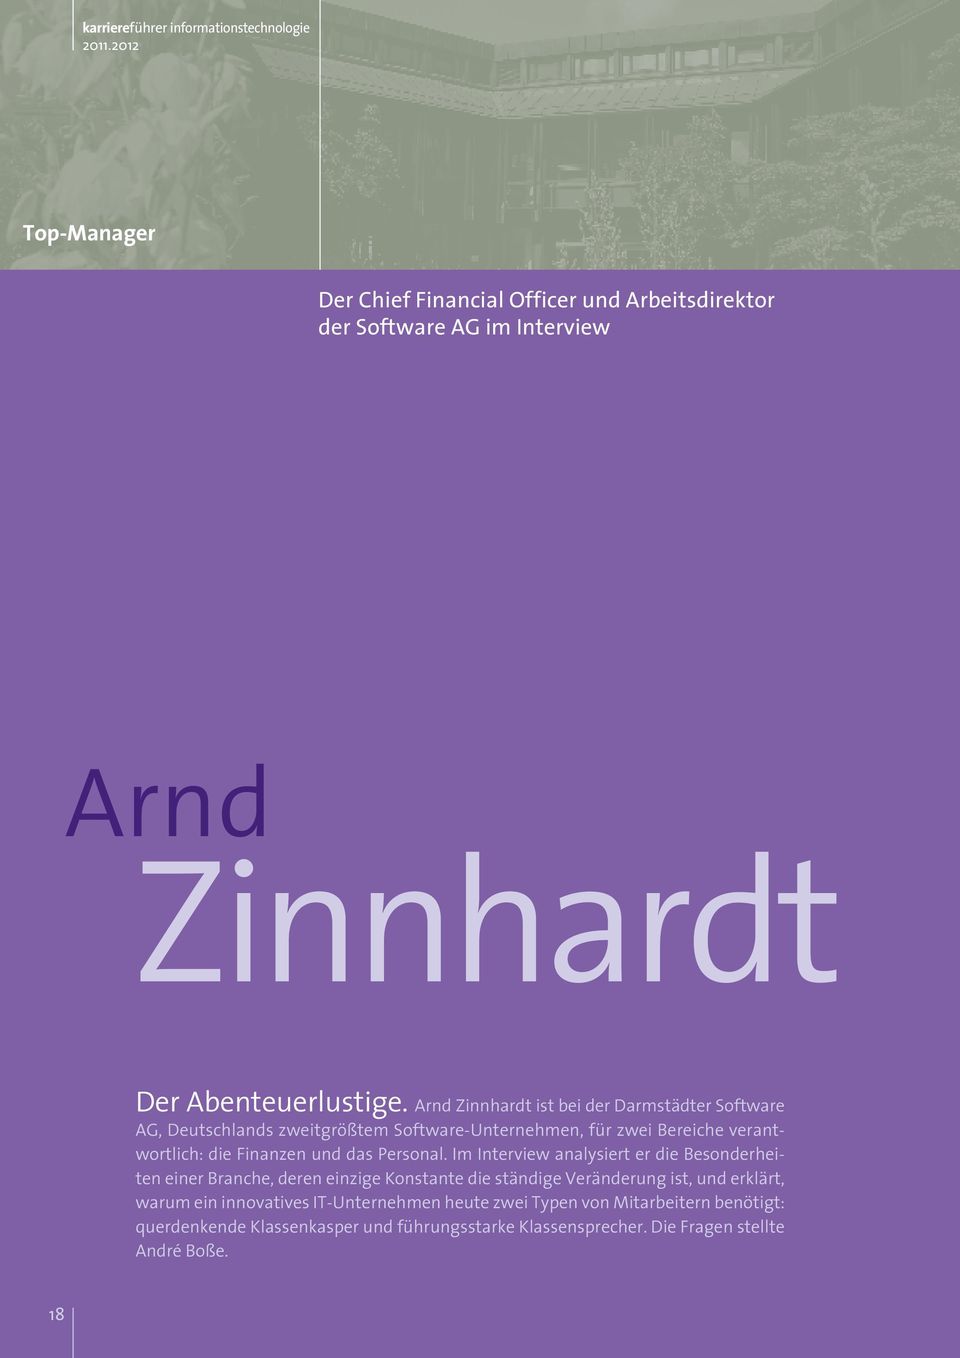 Arnd Zinnhardt ist bei der Darmstädter Software AG, Deutschlands zweitgrößtem Software-Unternehmen, für zwei Bereiche verantwortlich: die Finanzen und das